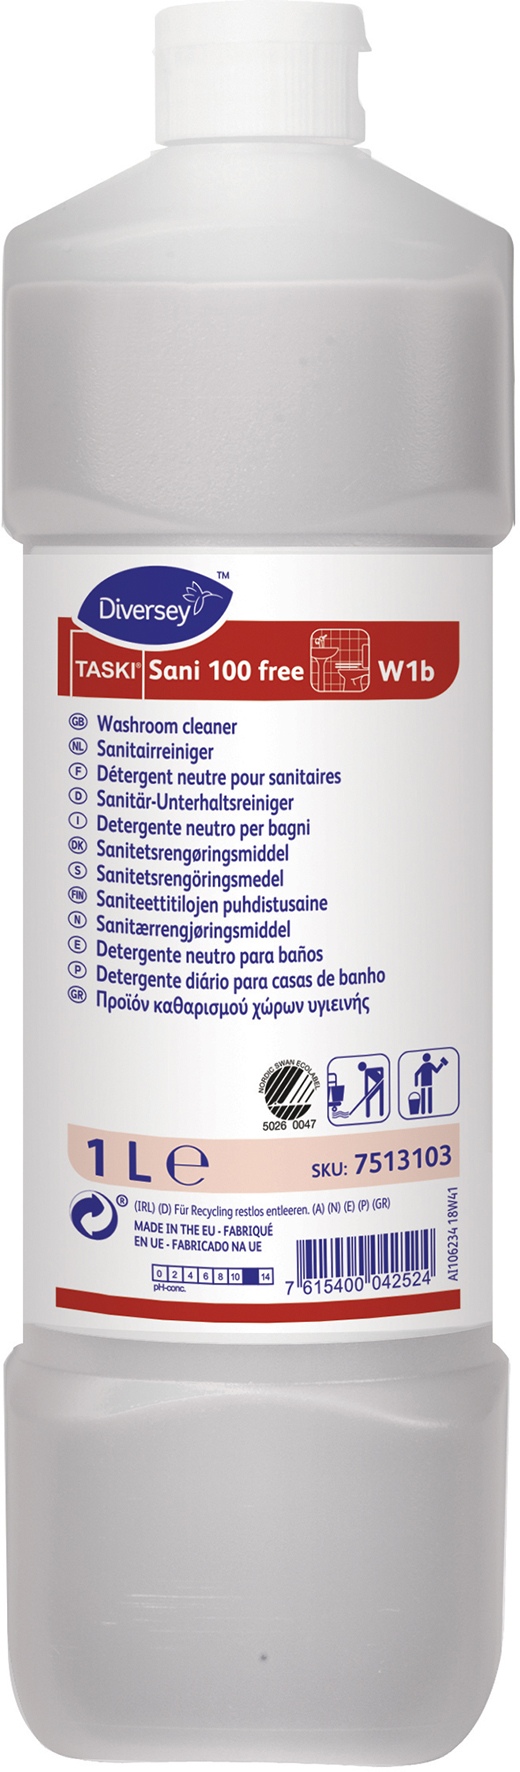 [2260248] Taski Sani 100 Free W3 1L